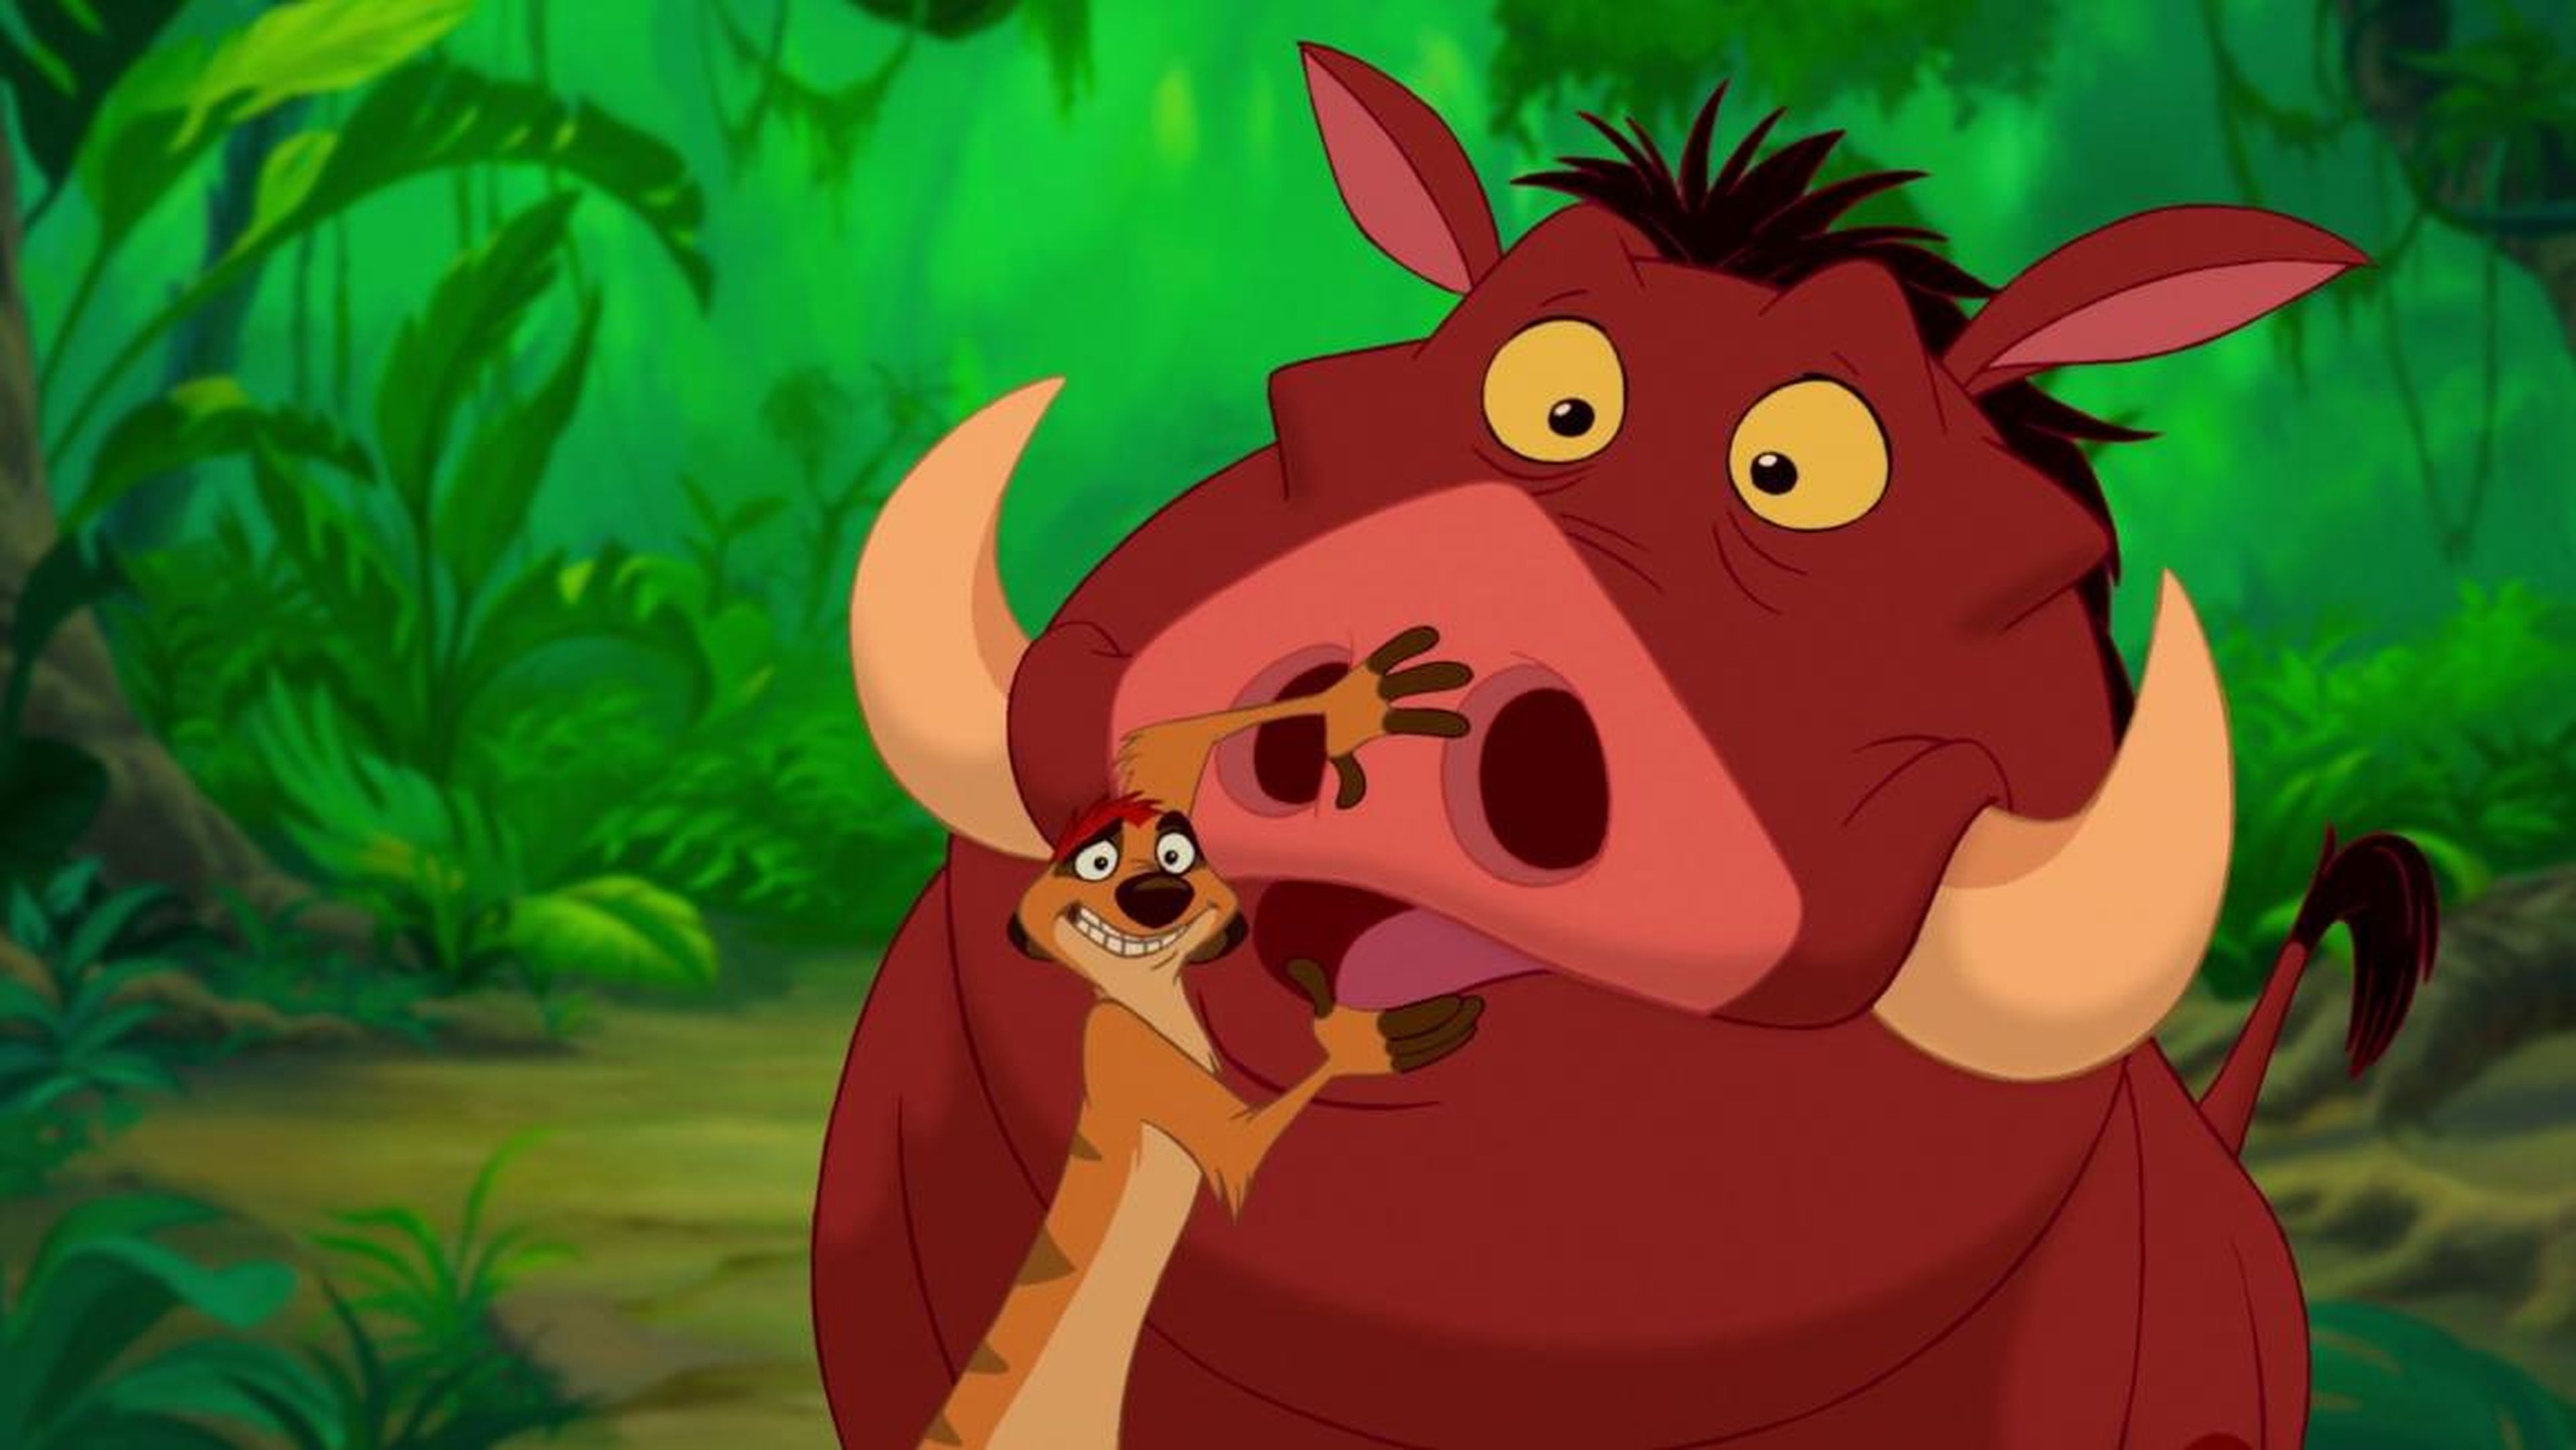 Timón le tapa la boca a Pumba en una parte de la canción.